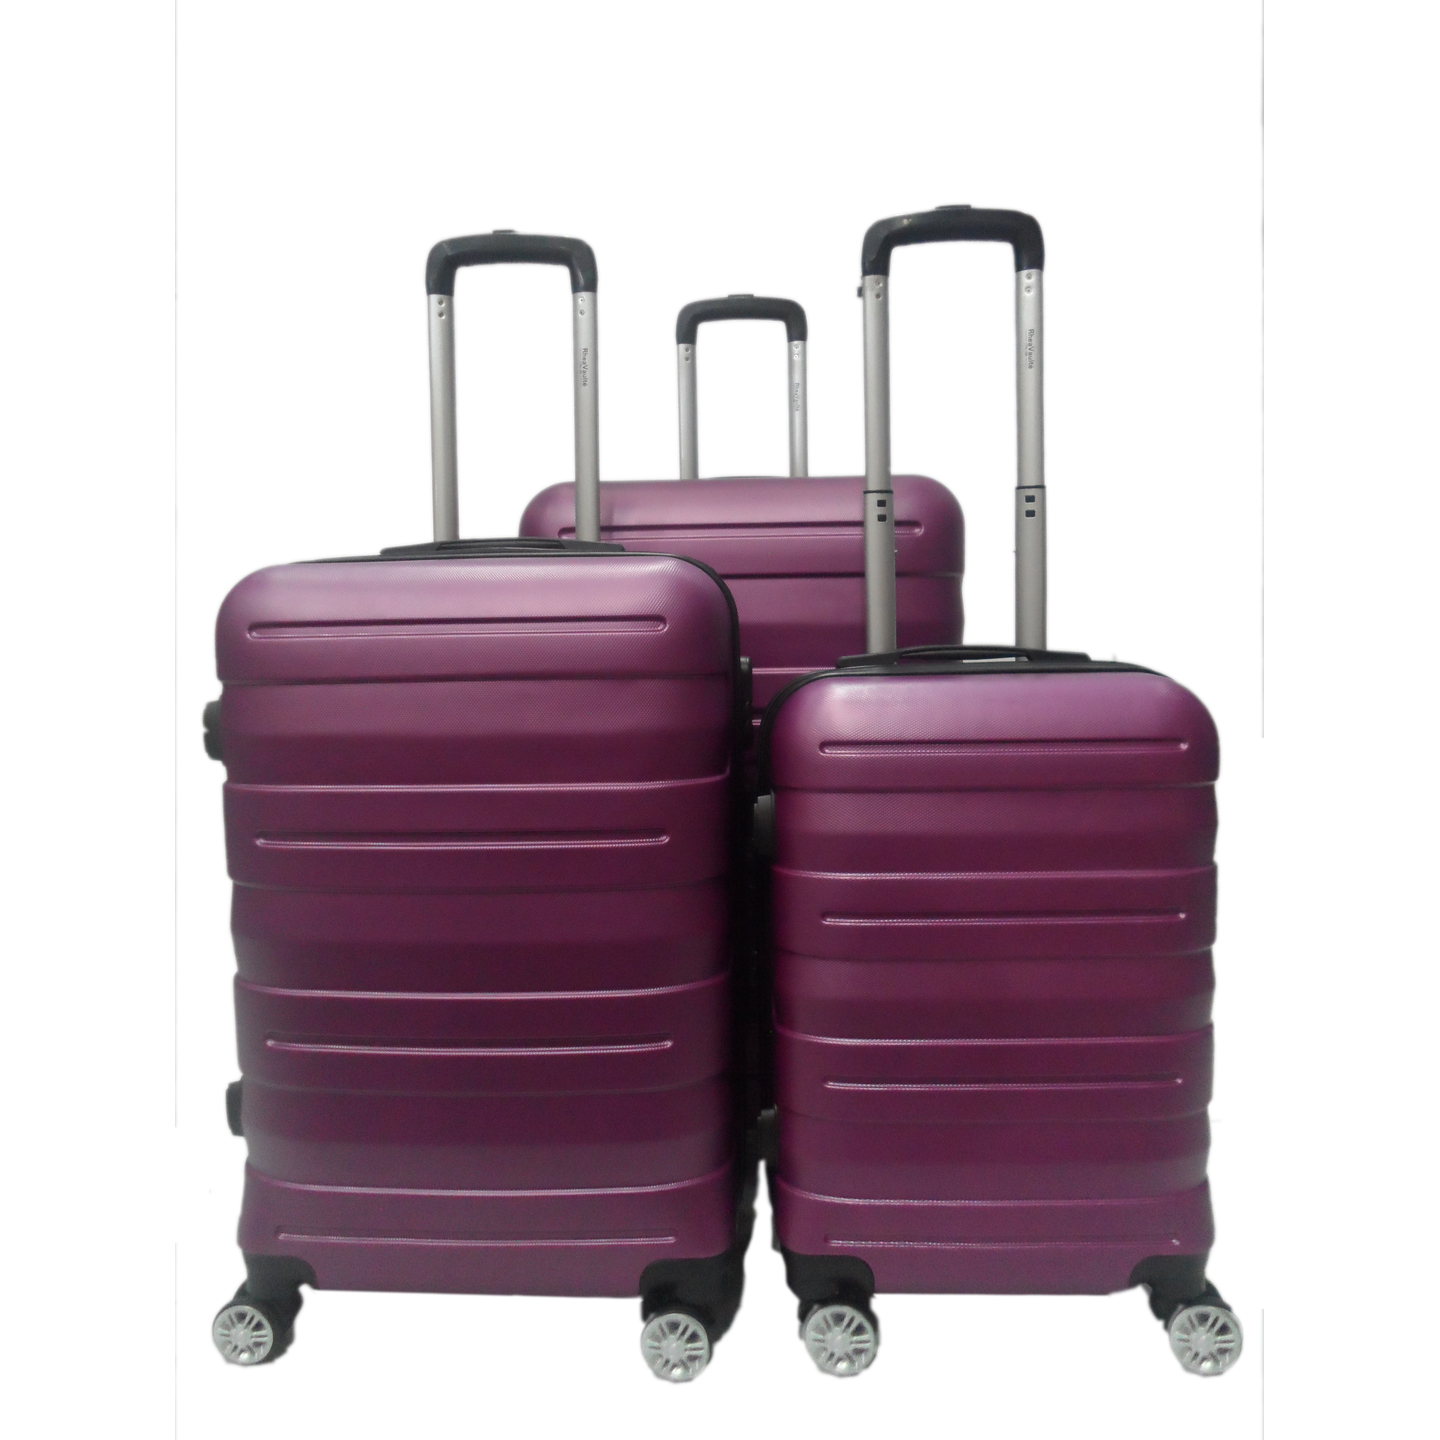 RV-130 Elegant Hard Box Luggage - Purple  20 inch, 24 inch, 28 inch